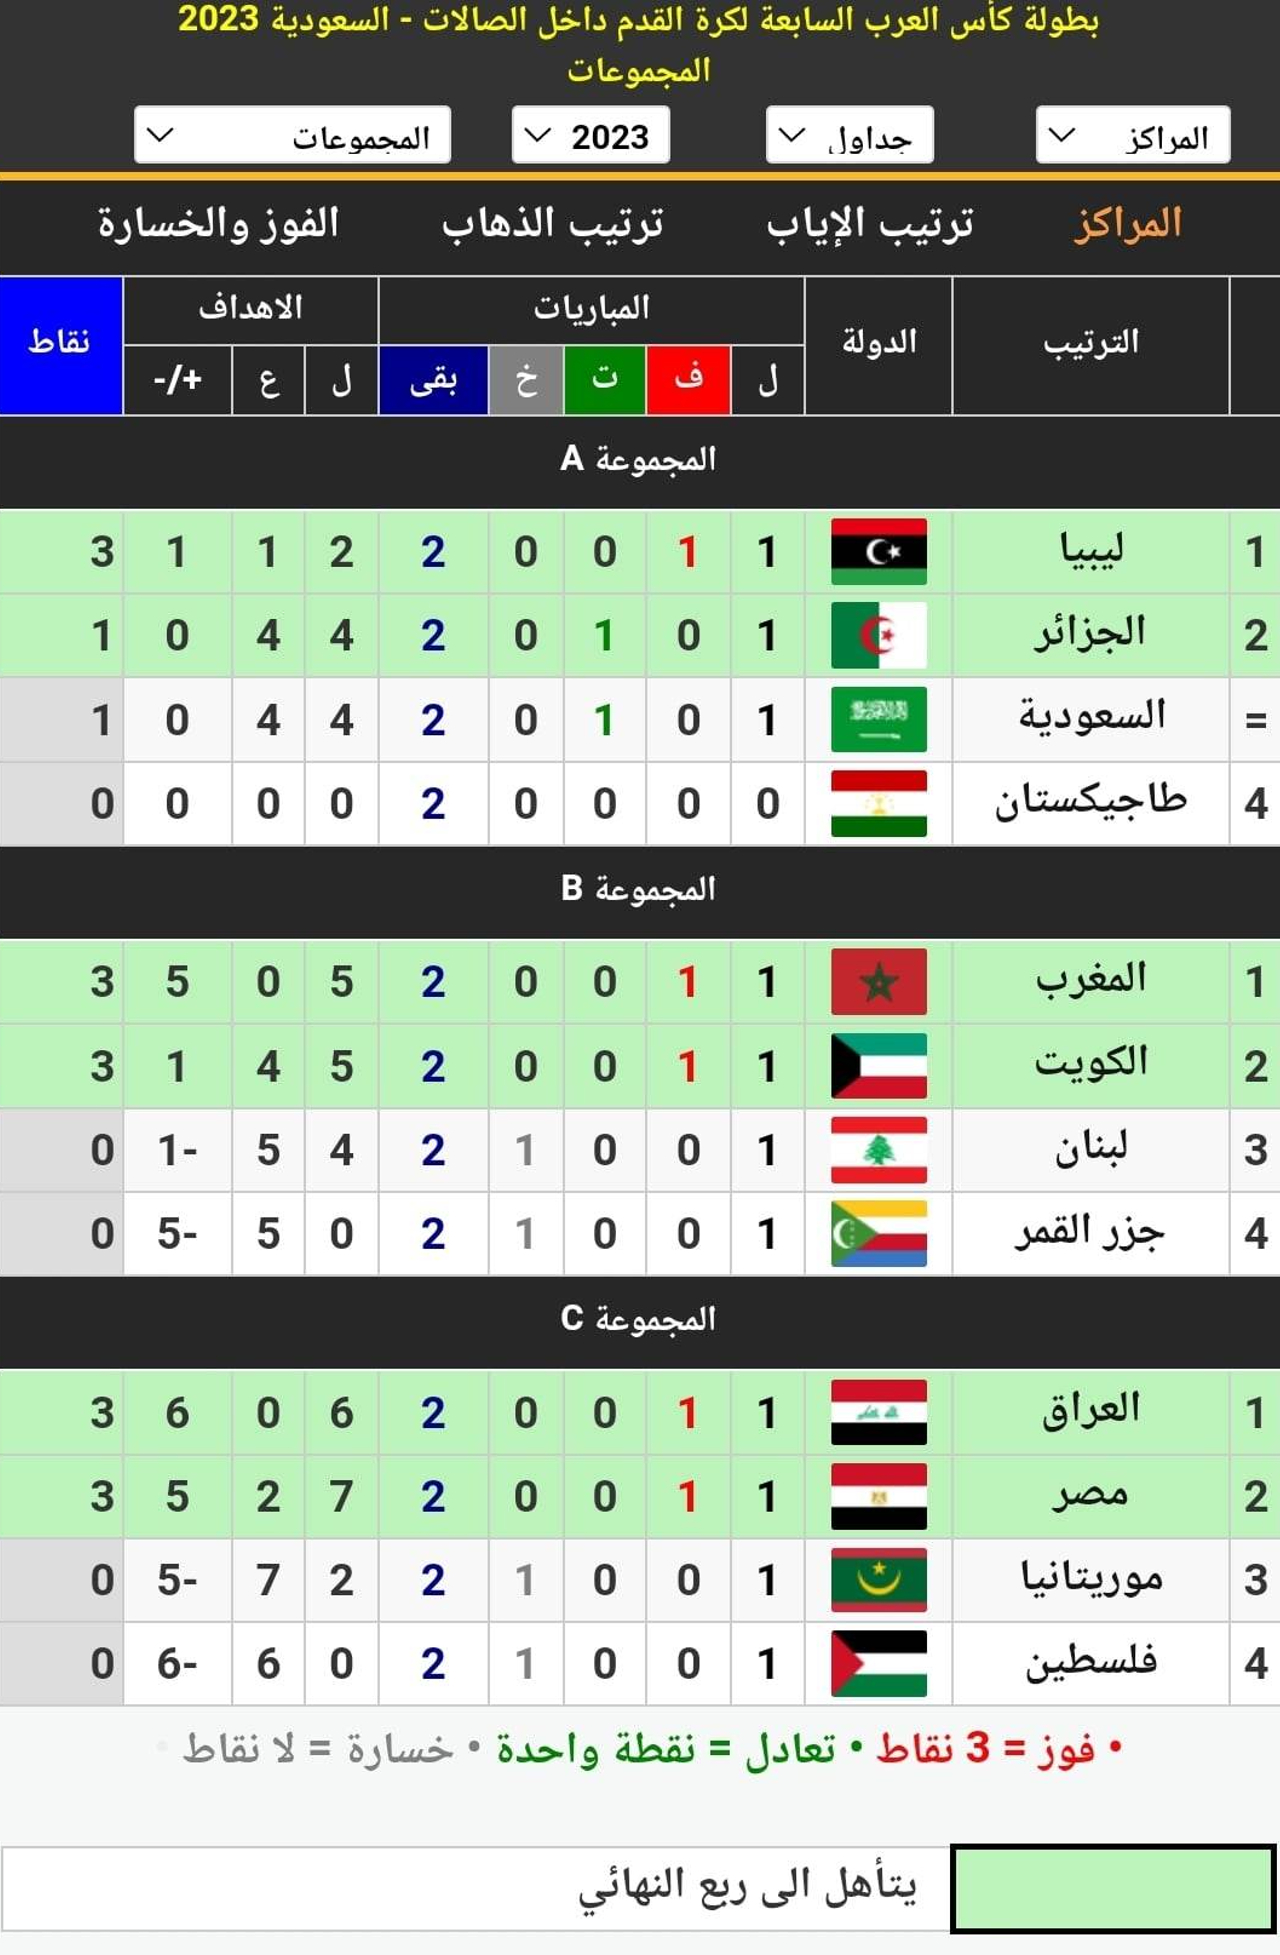 جدول ترتيب المجموعات الثلاث في البطولة العربية للكرة الخماسية بعد انتهاء مباريات الجولة الأولى